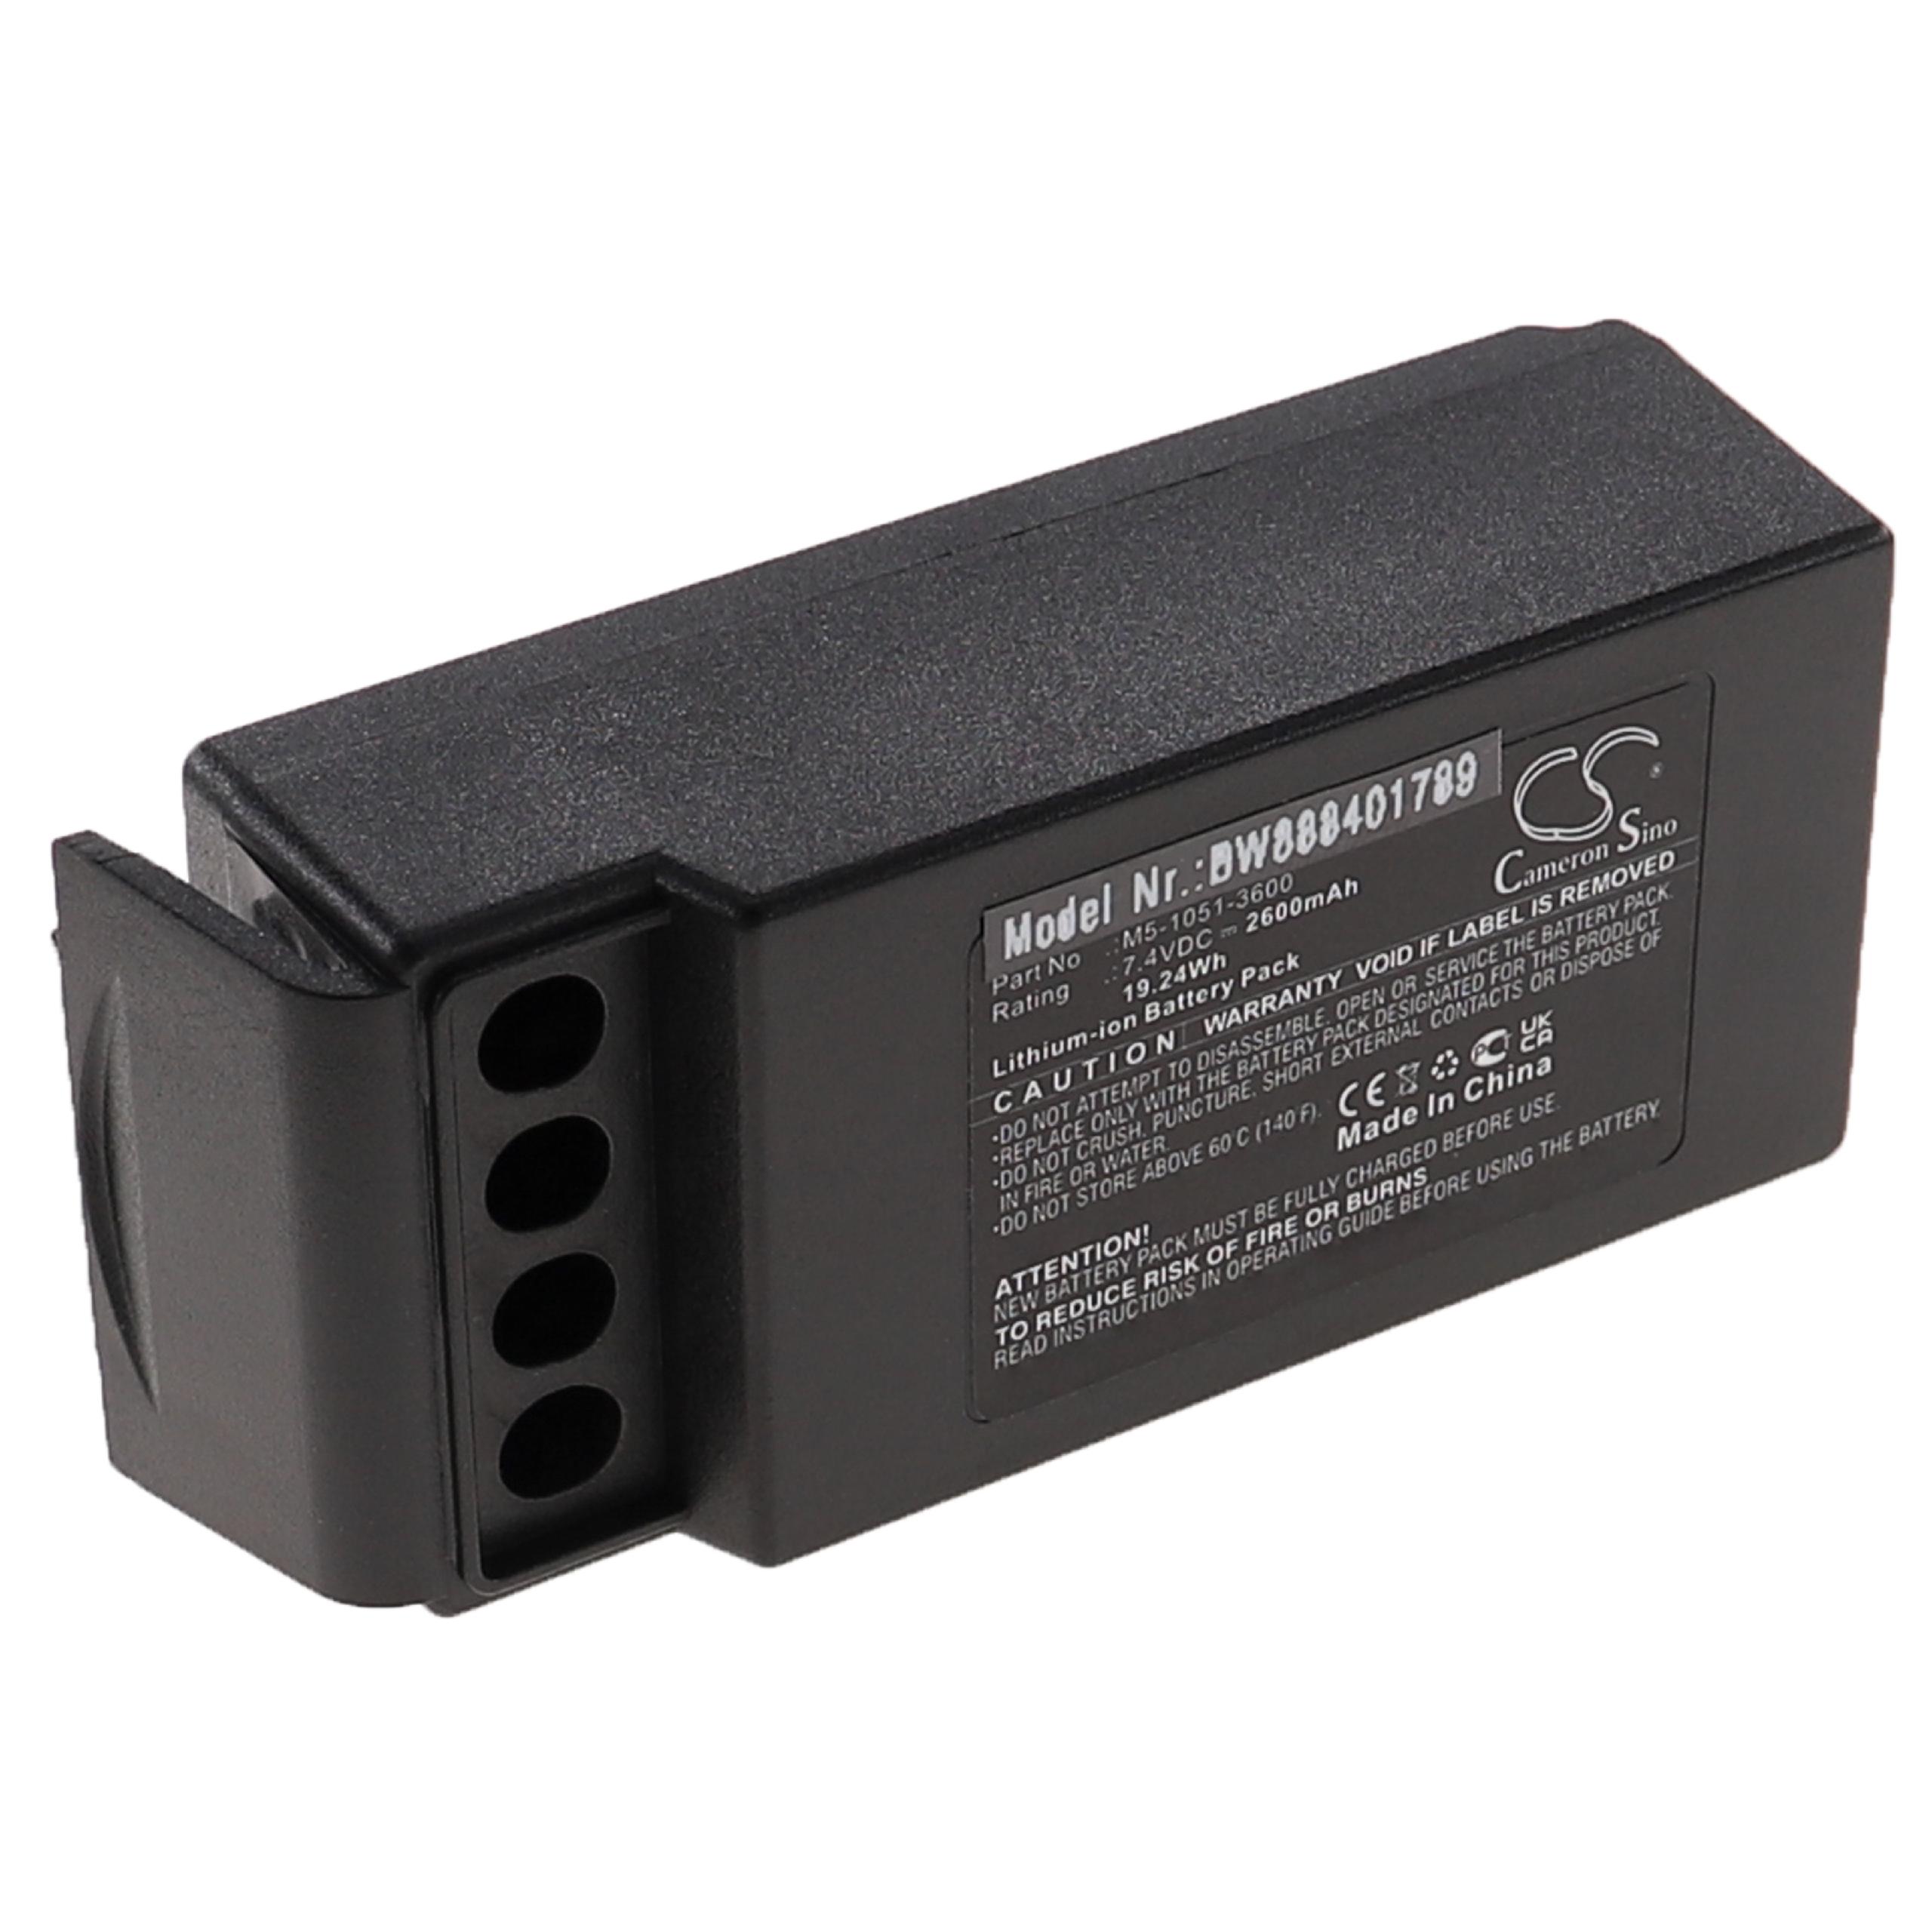 Batería reemplaza Cavotec M5-1051-3600 para mando distancia industrial Cavotec - 2600 mAh 7,4 V Li-Ion